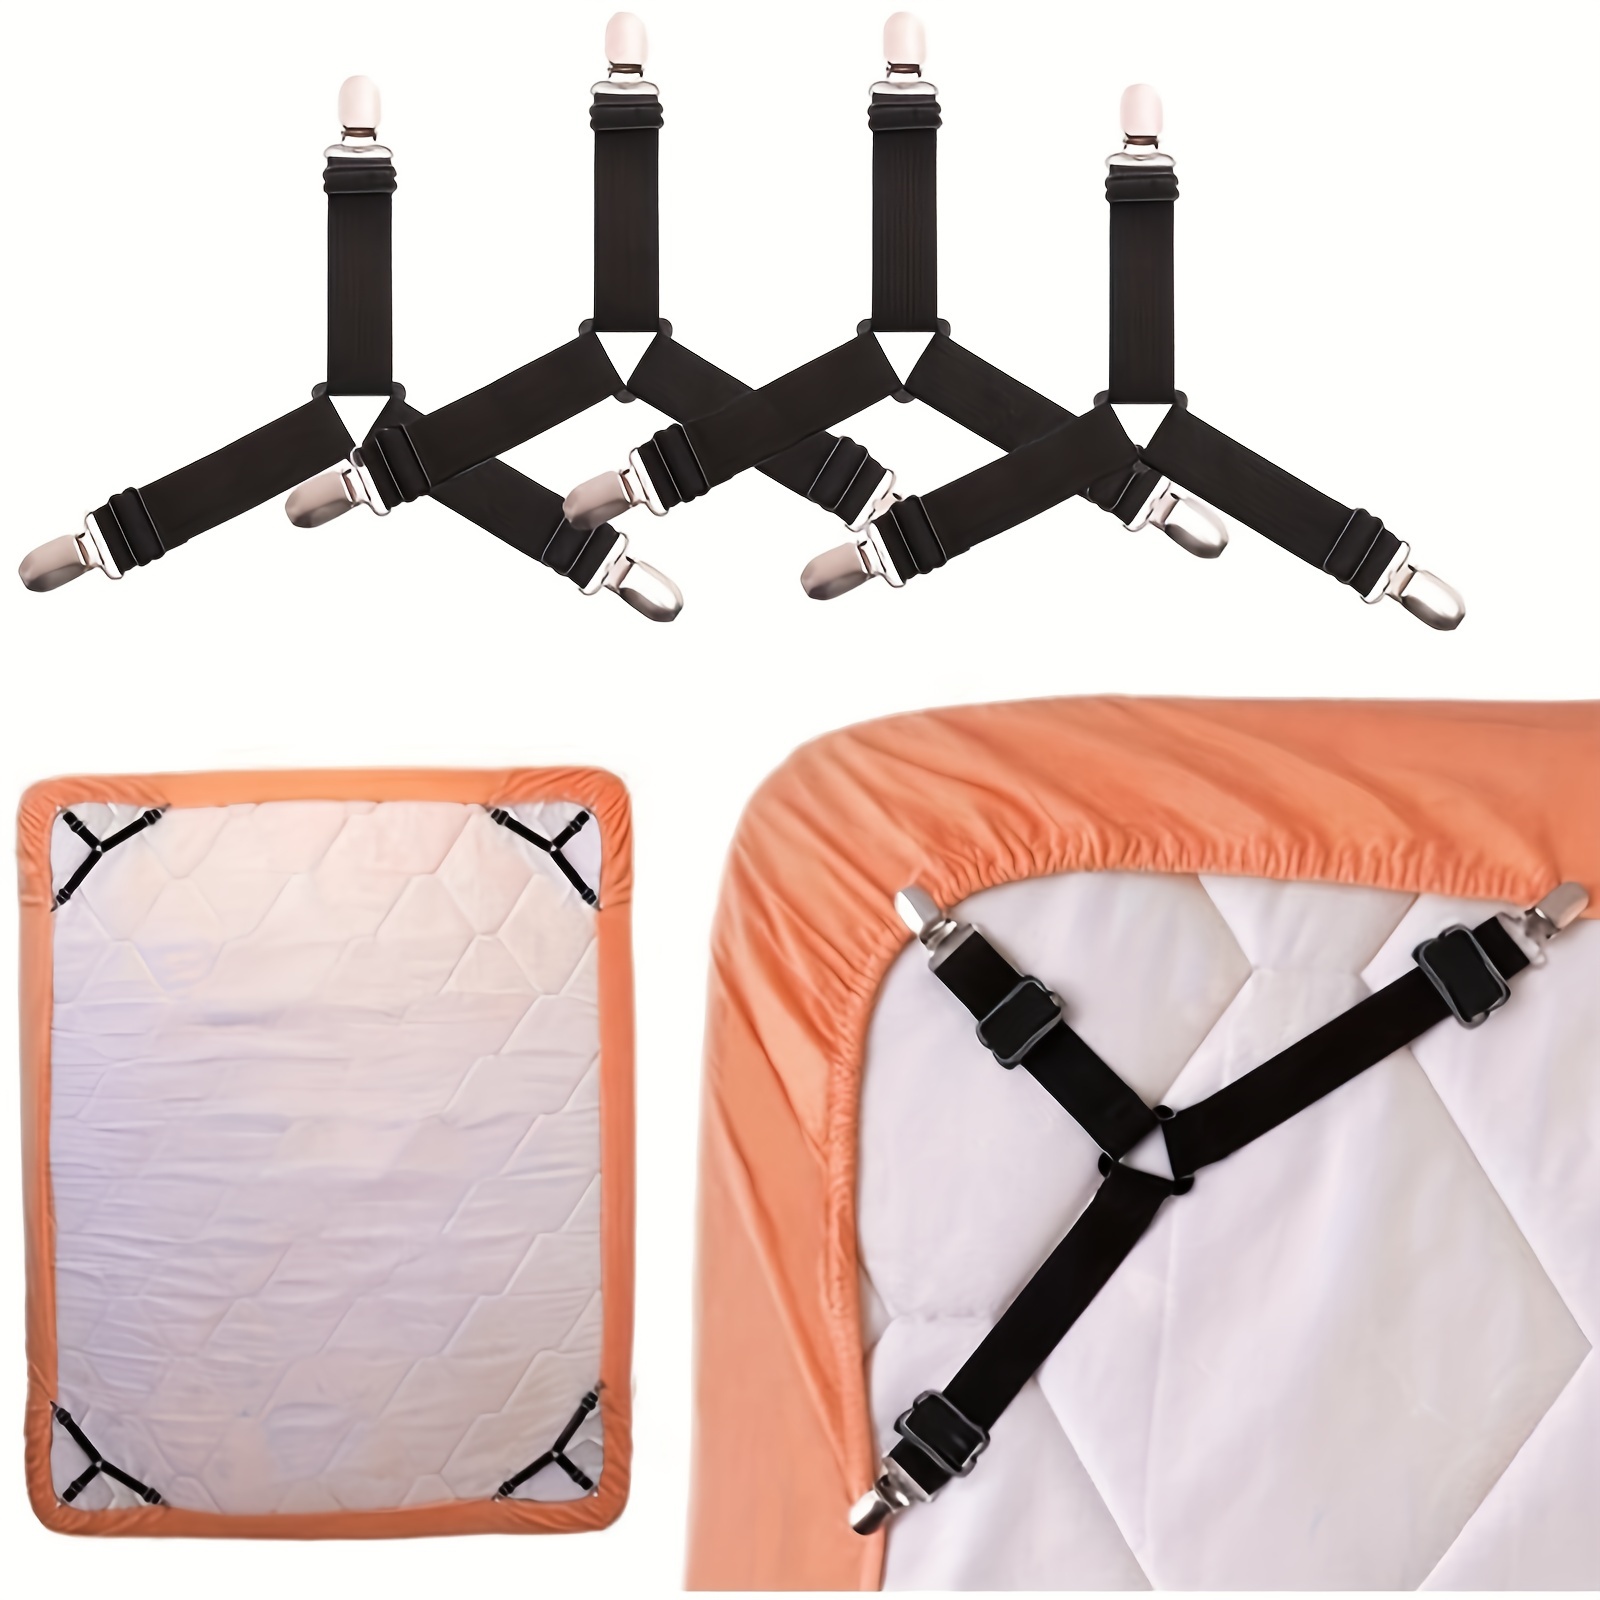 4 Pcs Bed Sheet Holder Grippers Corner Straps Suspenders For